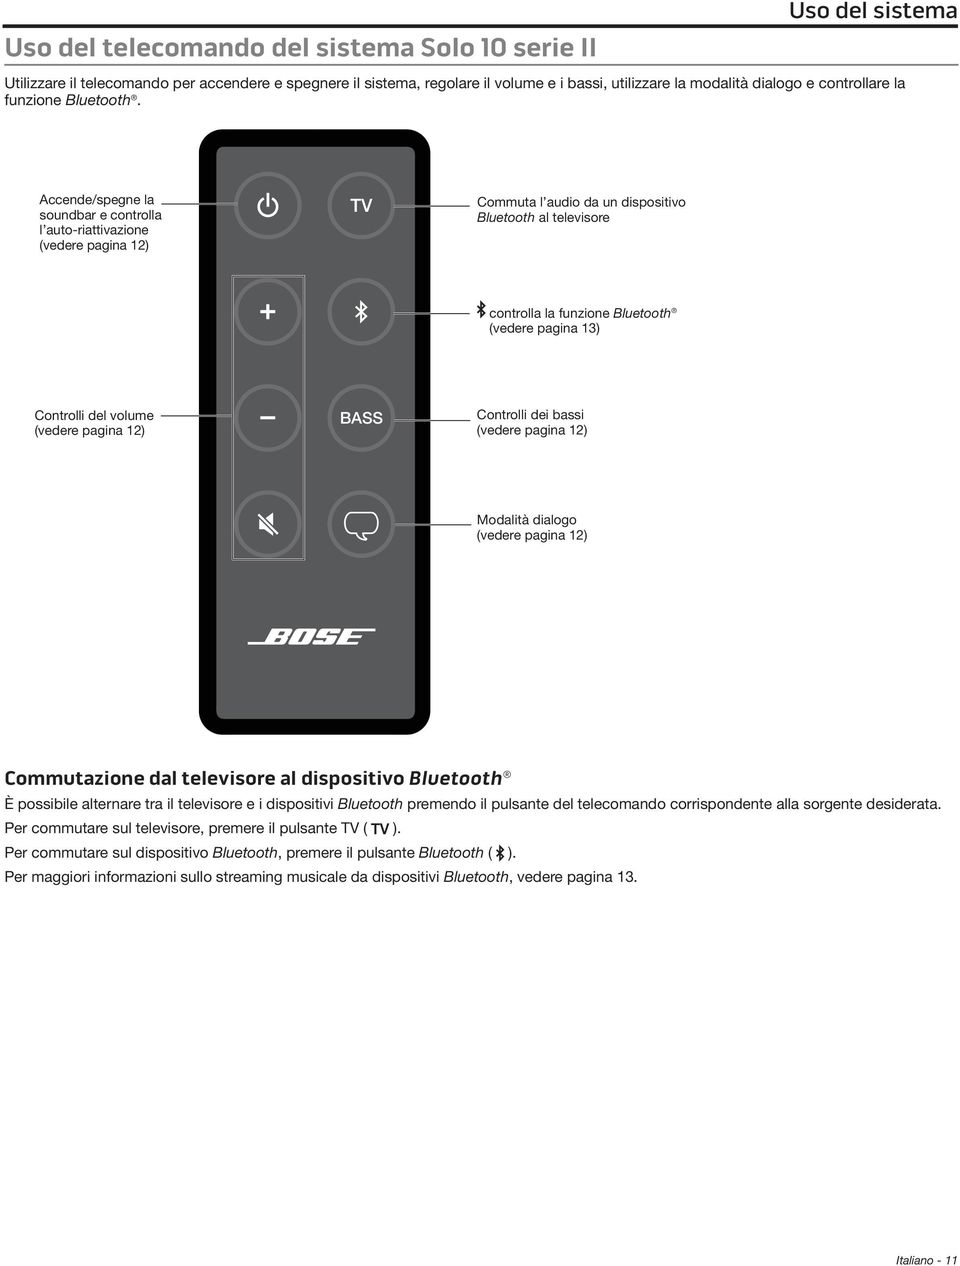 Accende/spegne la soundbar e controlla l auto-riattivazione (vedere pagina 12) TV Commuta l audio da un dispositivo Bluetooth al televisore controlla la funzione Bluetooth (vedere pagina 13)